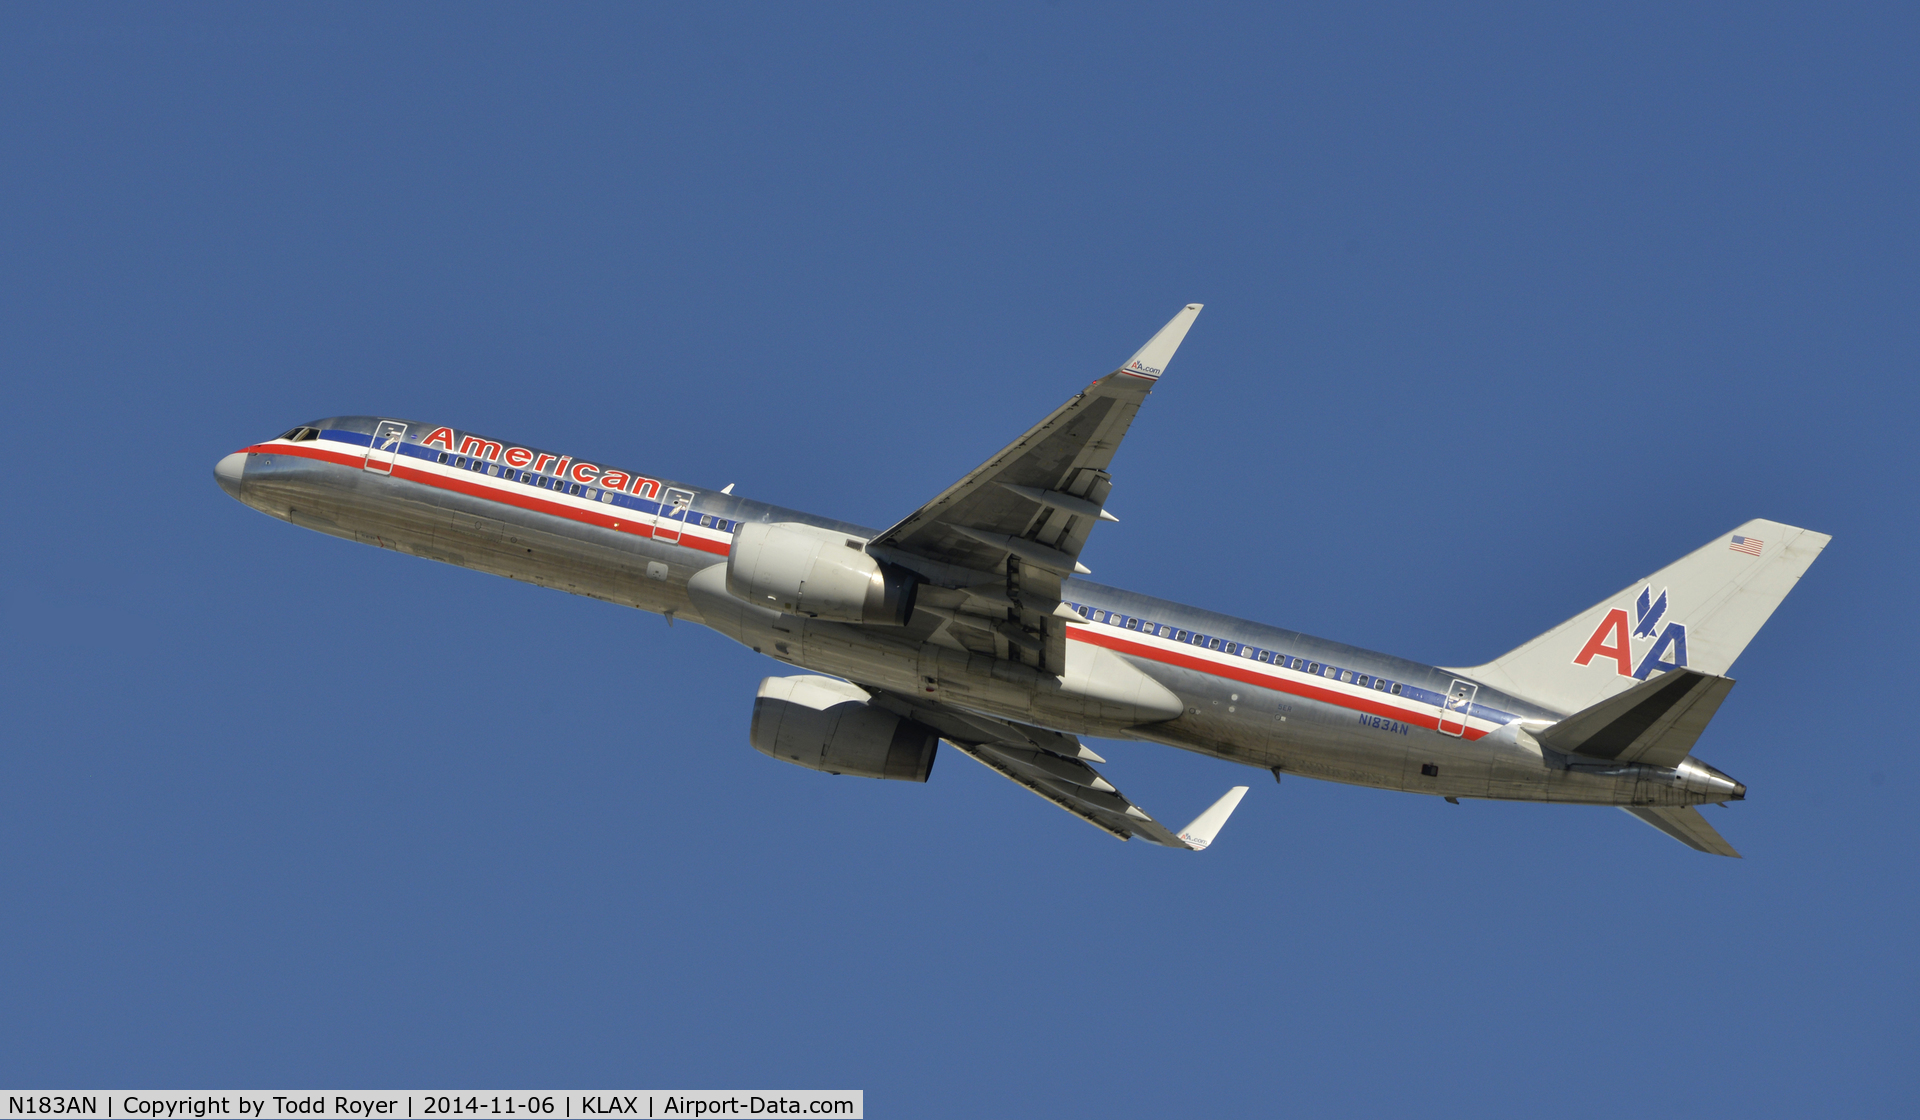 N183AN, 1999 Boeing 757-223 C/N 29593, Departing LAX on 25R